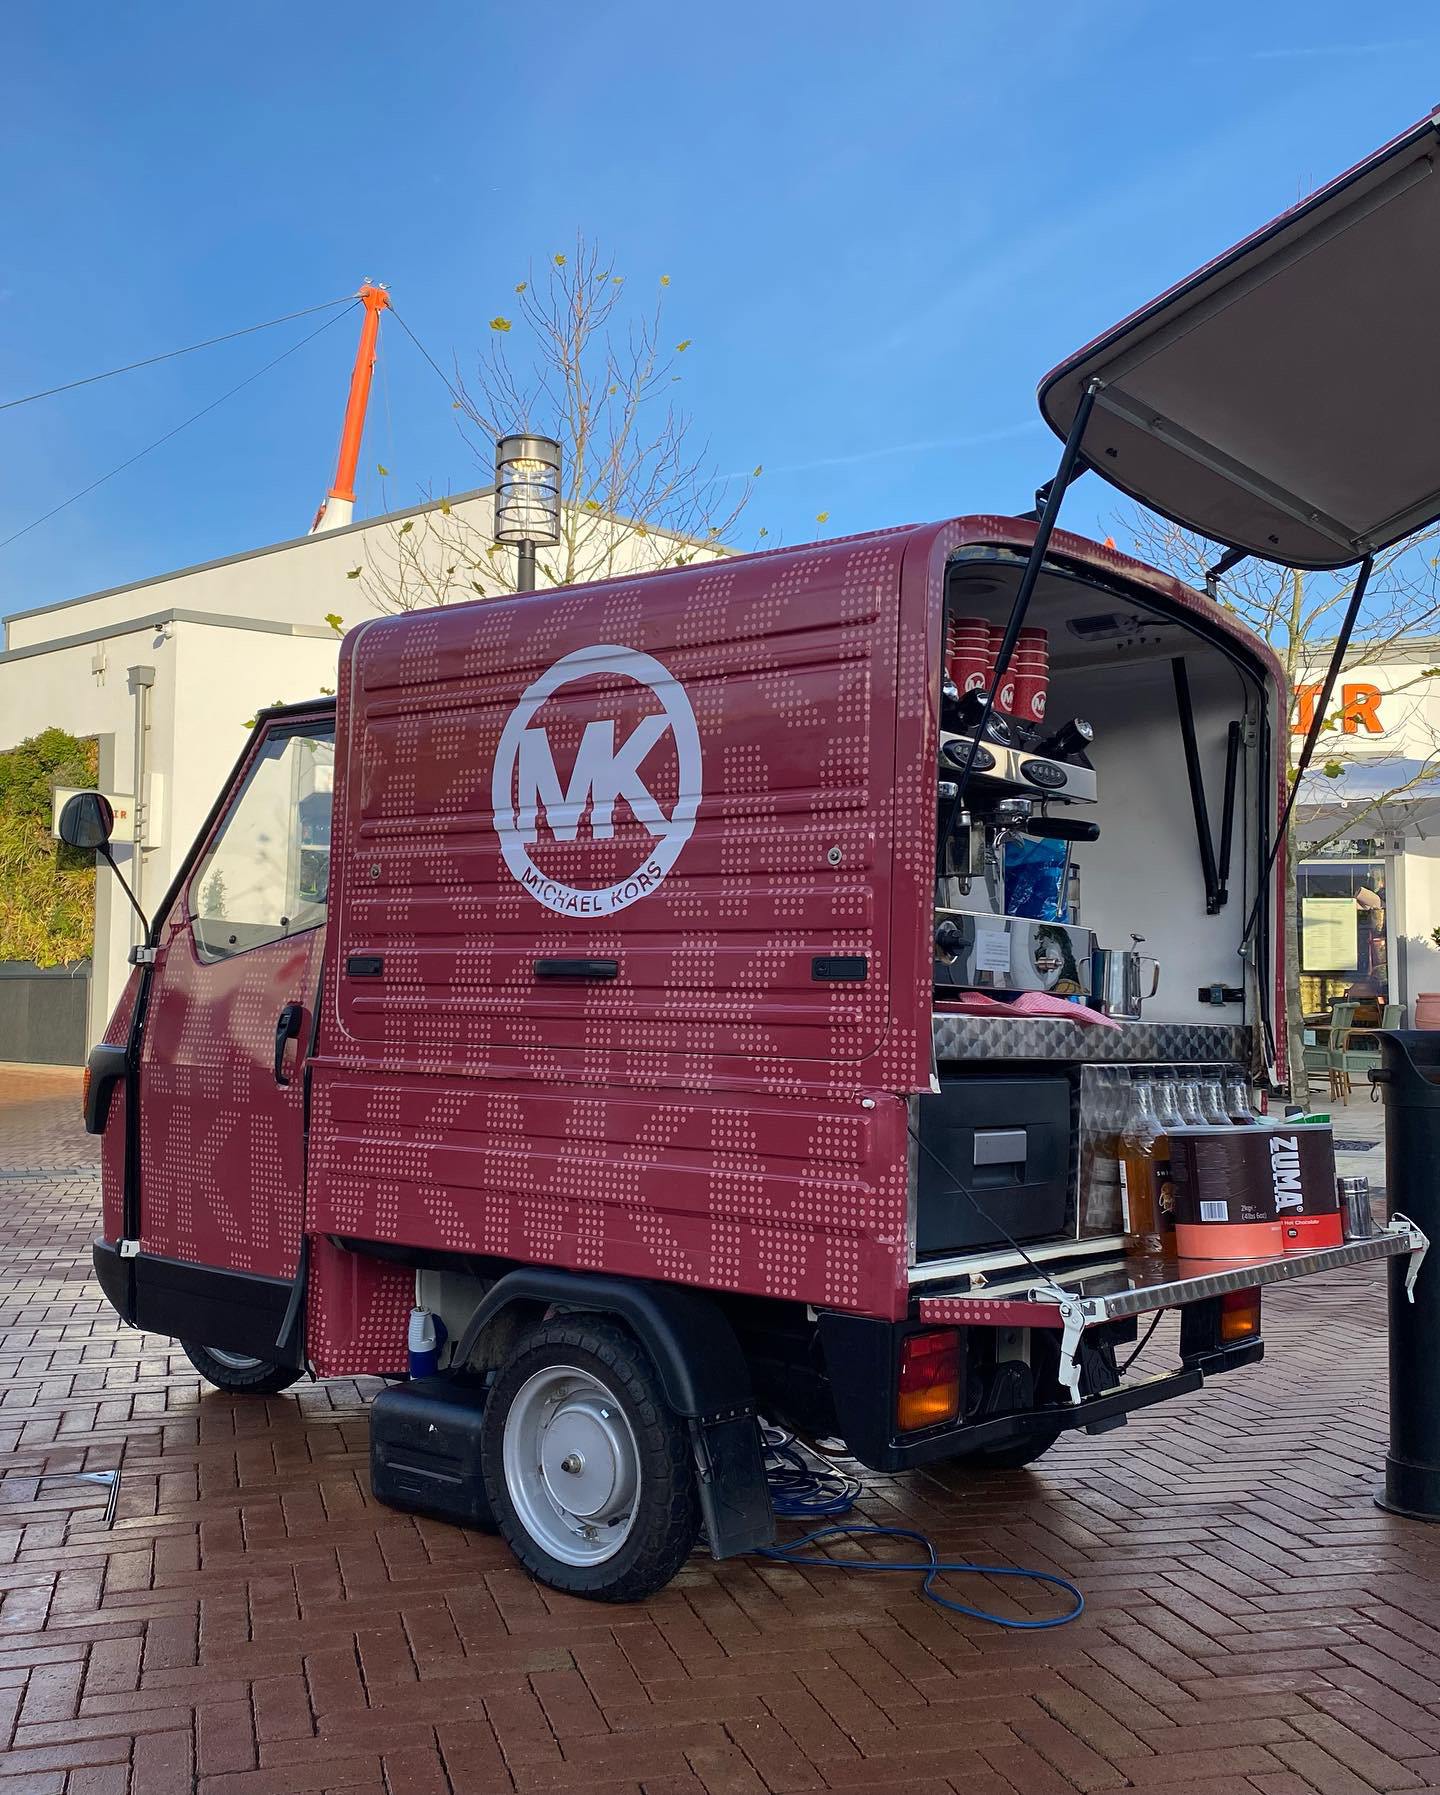 The Mobile Coffee Bean MK Michael Kors branded vinyl wrap van